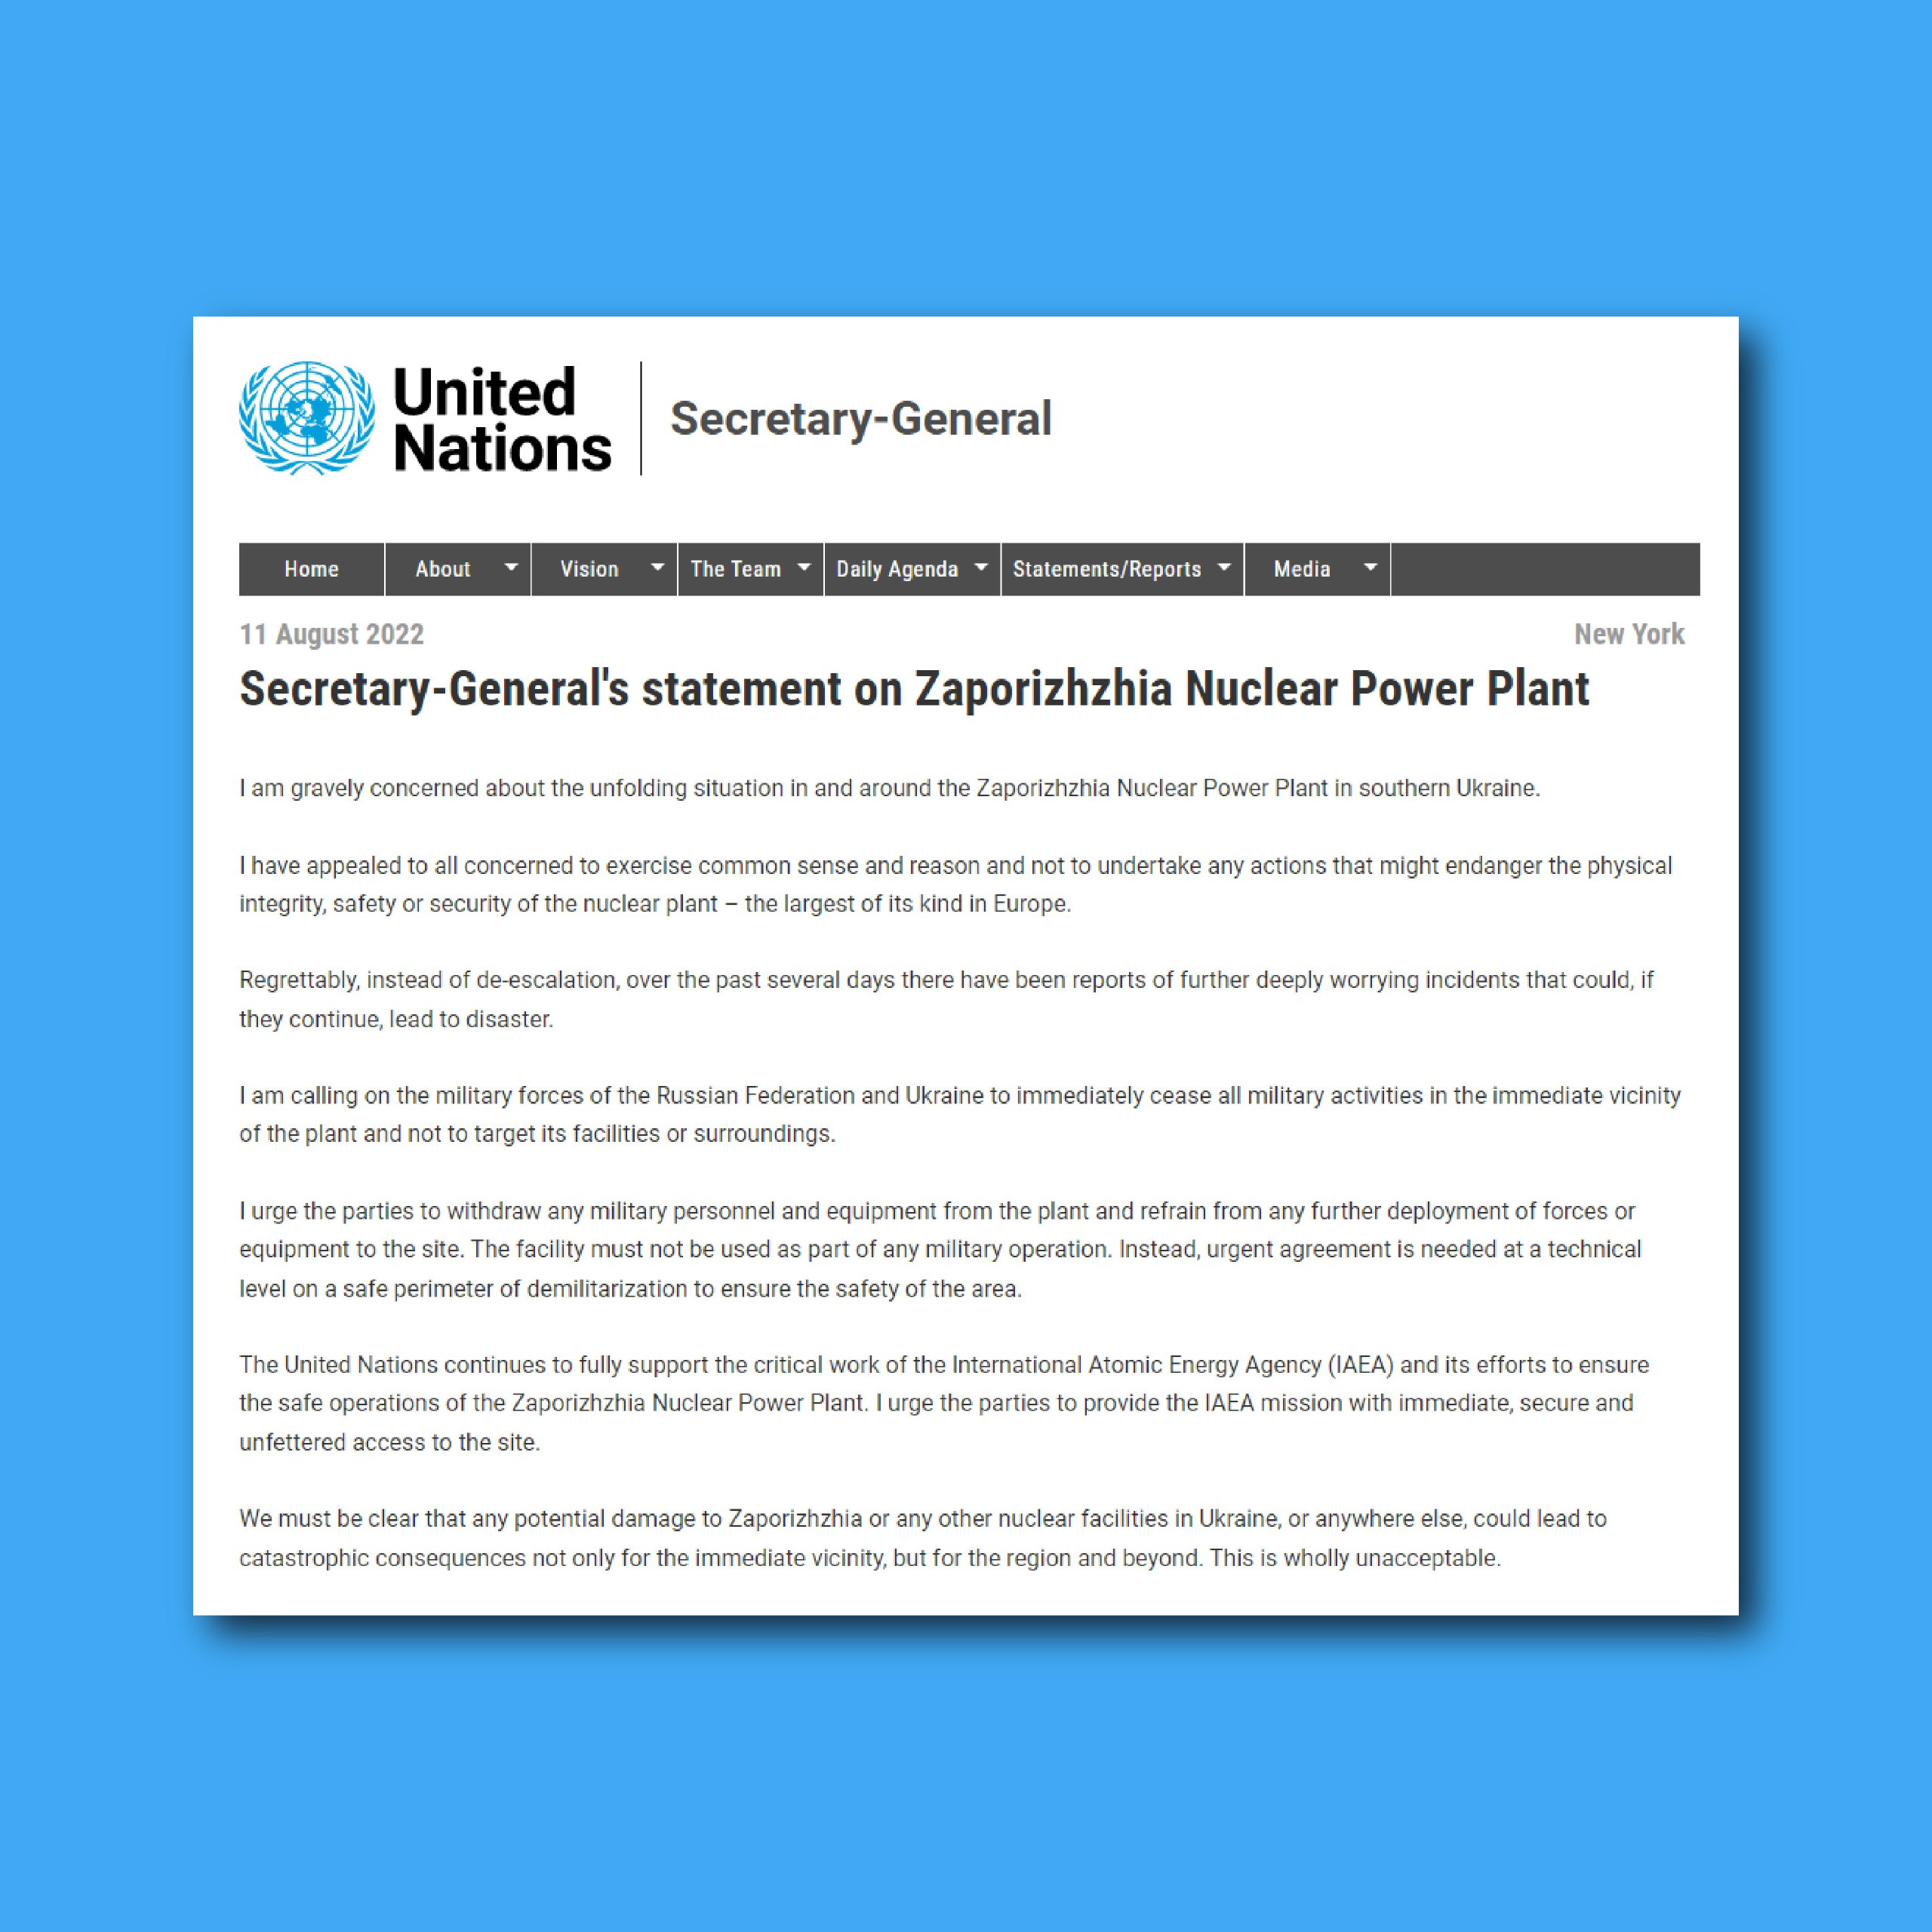 ‼️ Будь-яка потенційна шкода Запорізькій АЕС чи іншим ядерним об’єктам в Україні може призвести до катастрофічних наслідків, – Генсек ООН 